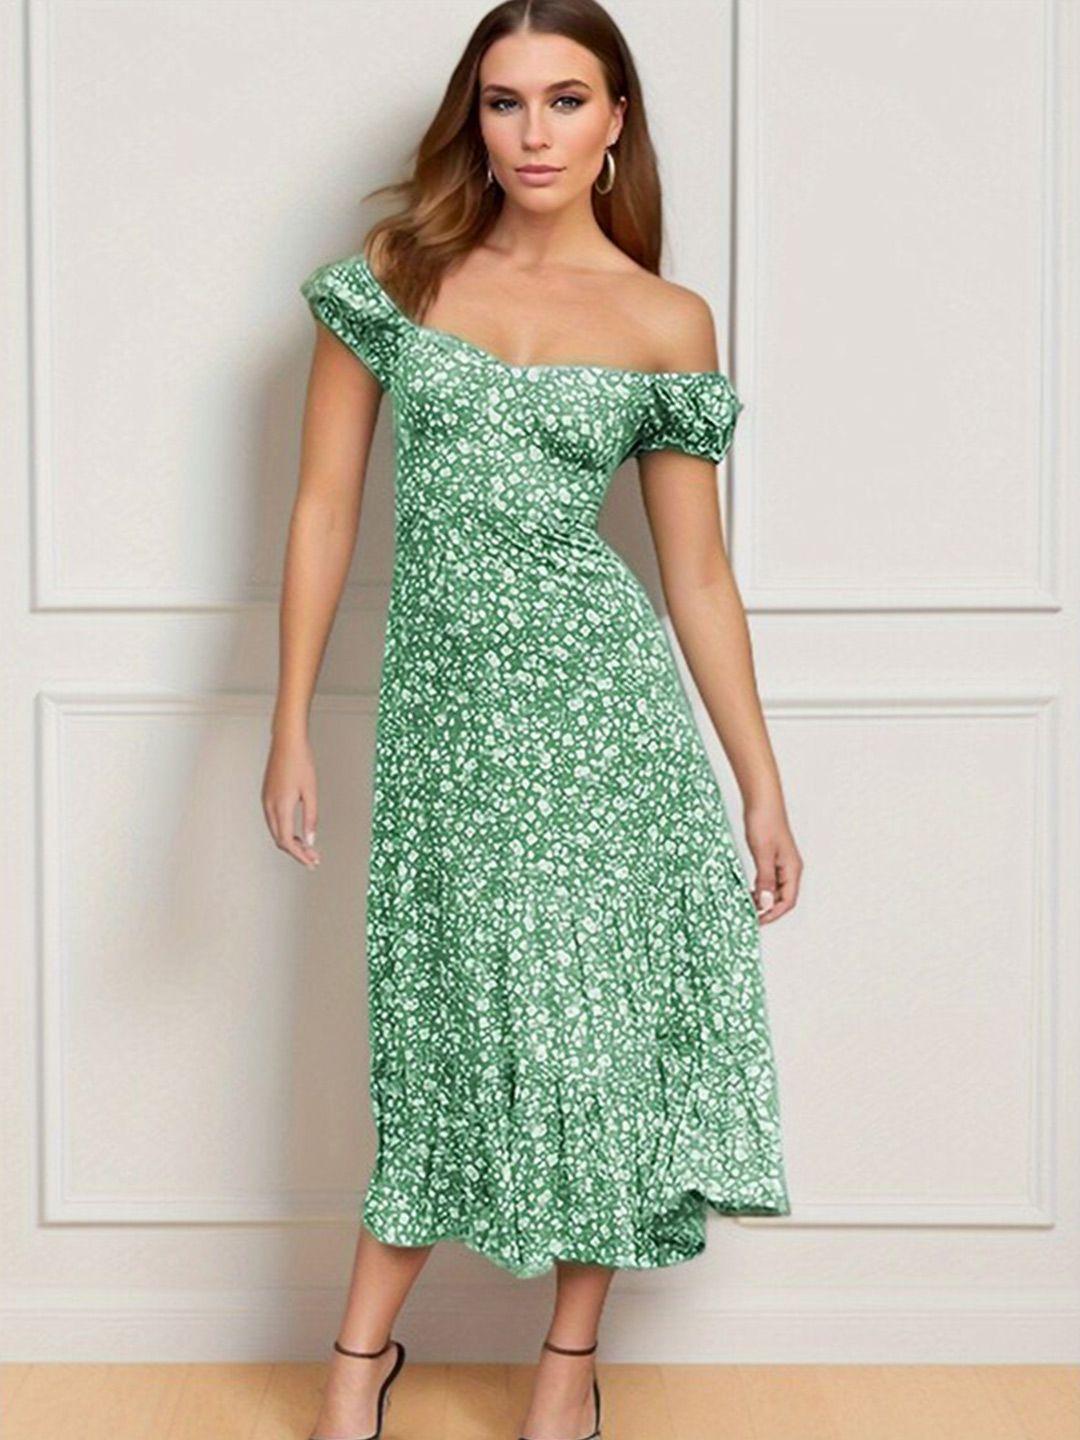 stylecast floral print off-shoulder a-line dress